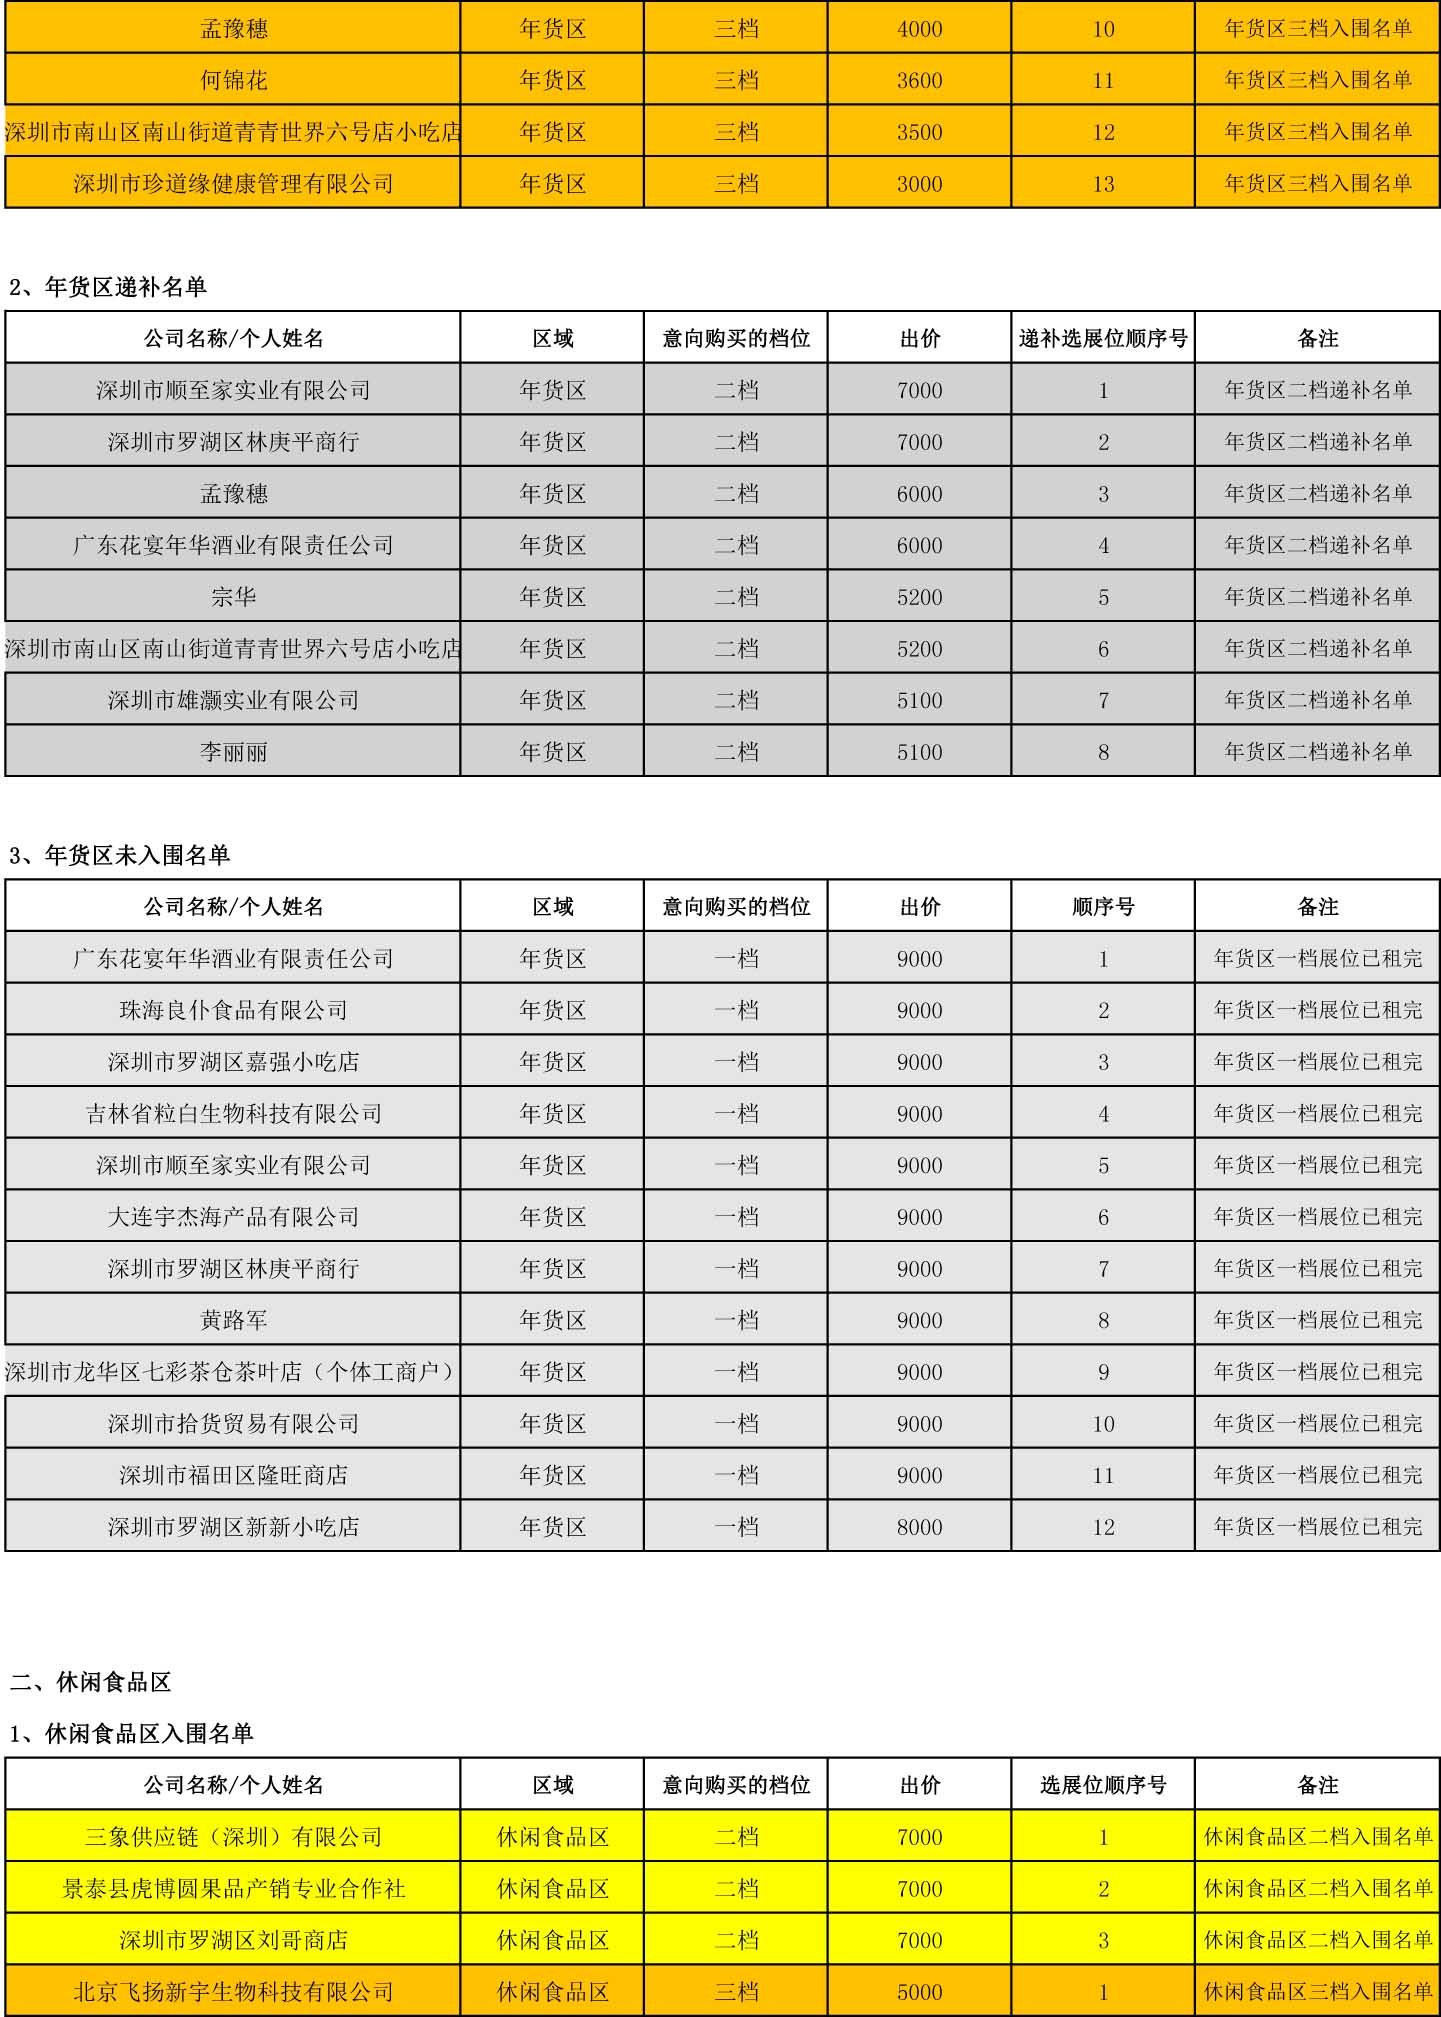 2019年深圳迎春花市中心会场第二轮展位招商入围结果公示